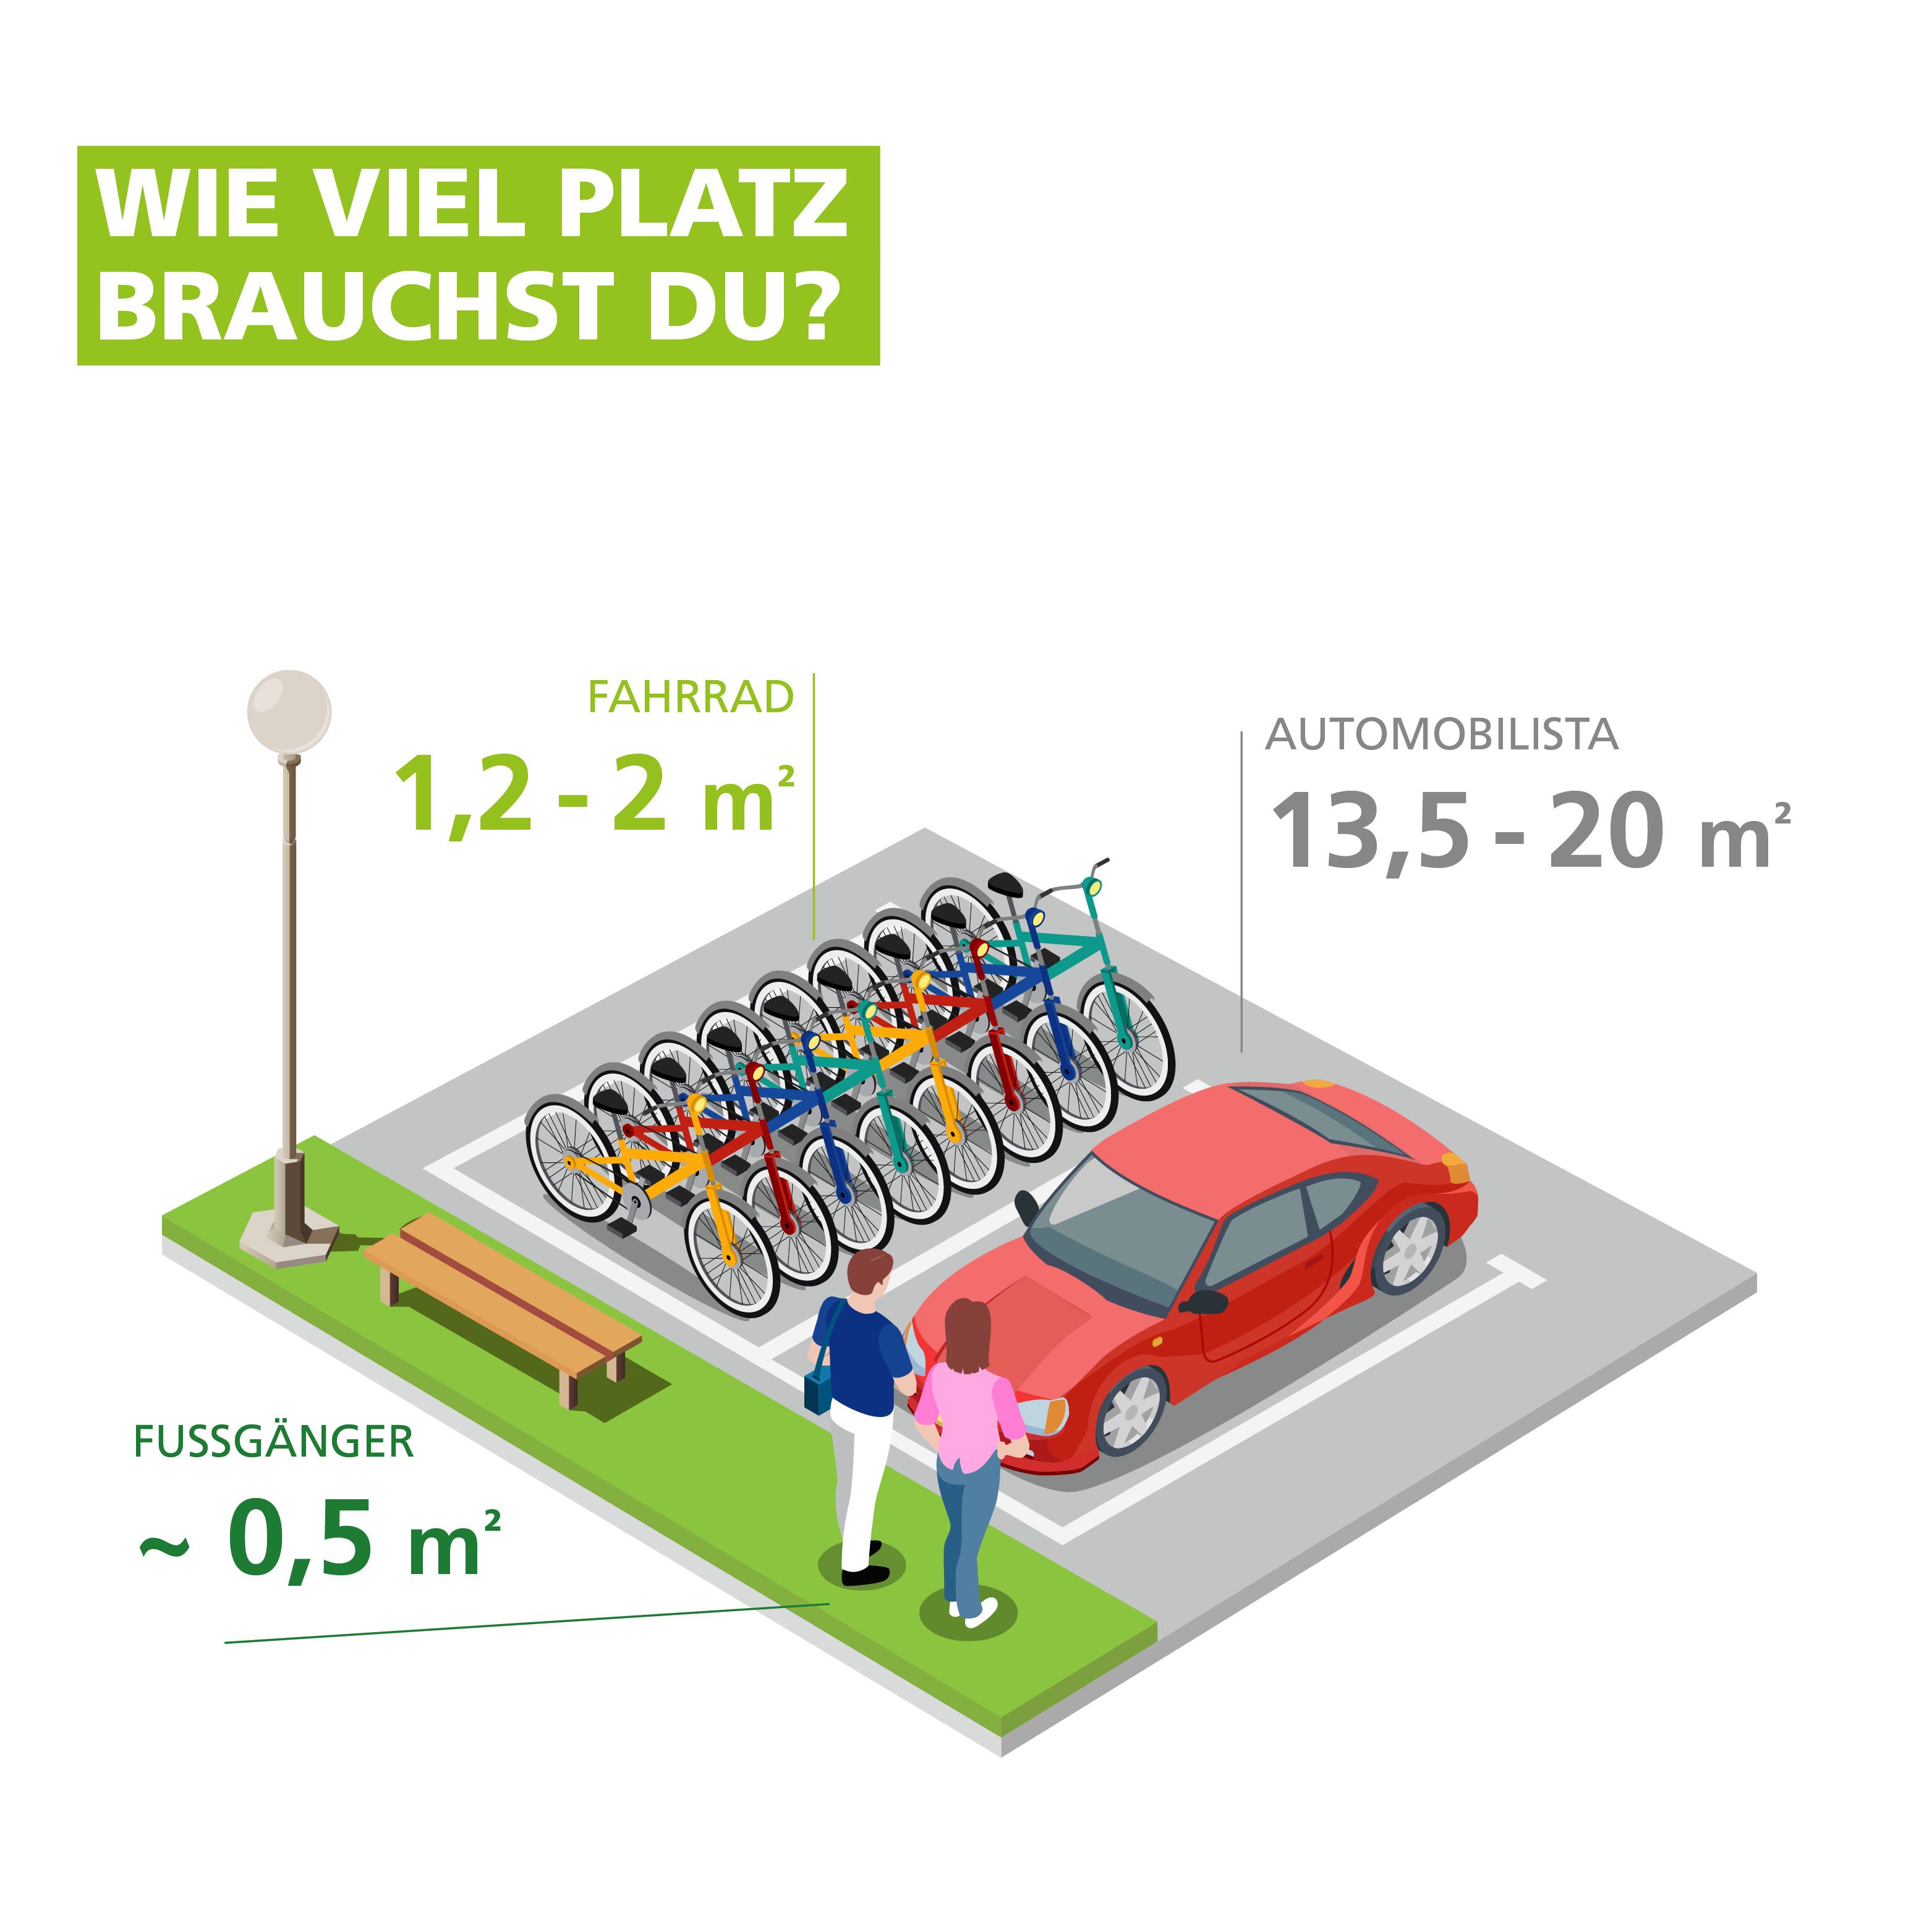 GM-infografiche-900x900px-Wie_viel_Platz-DE.jpg